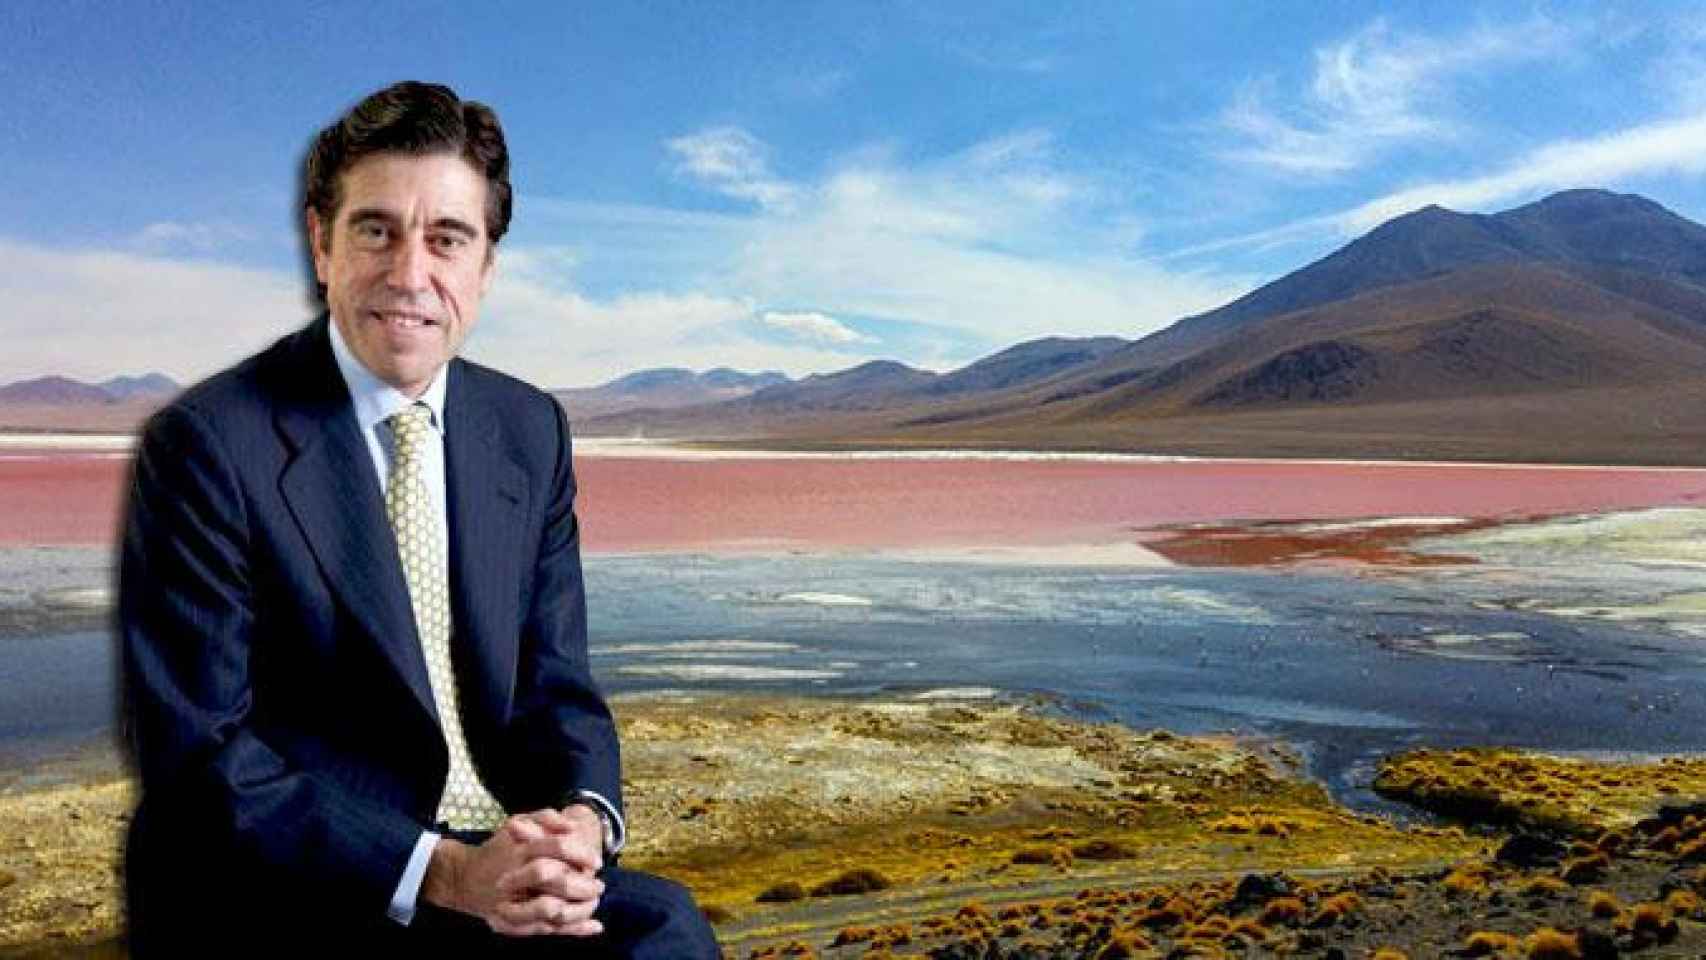 Manuel Manrique, presidente ejecutivo de Sacyr, y una imagen de la zona de Bolivia donde el grupo construirá la geotérmica a mayor altura del mundo / CG